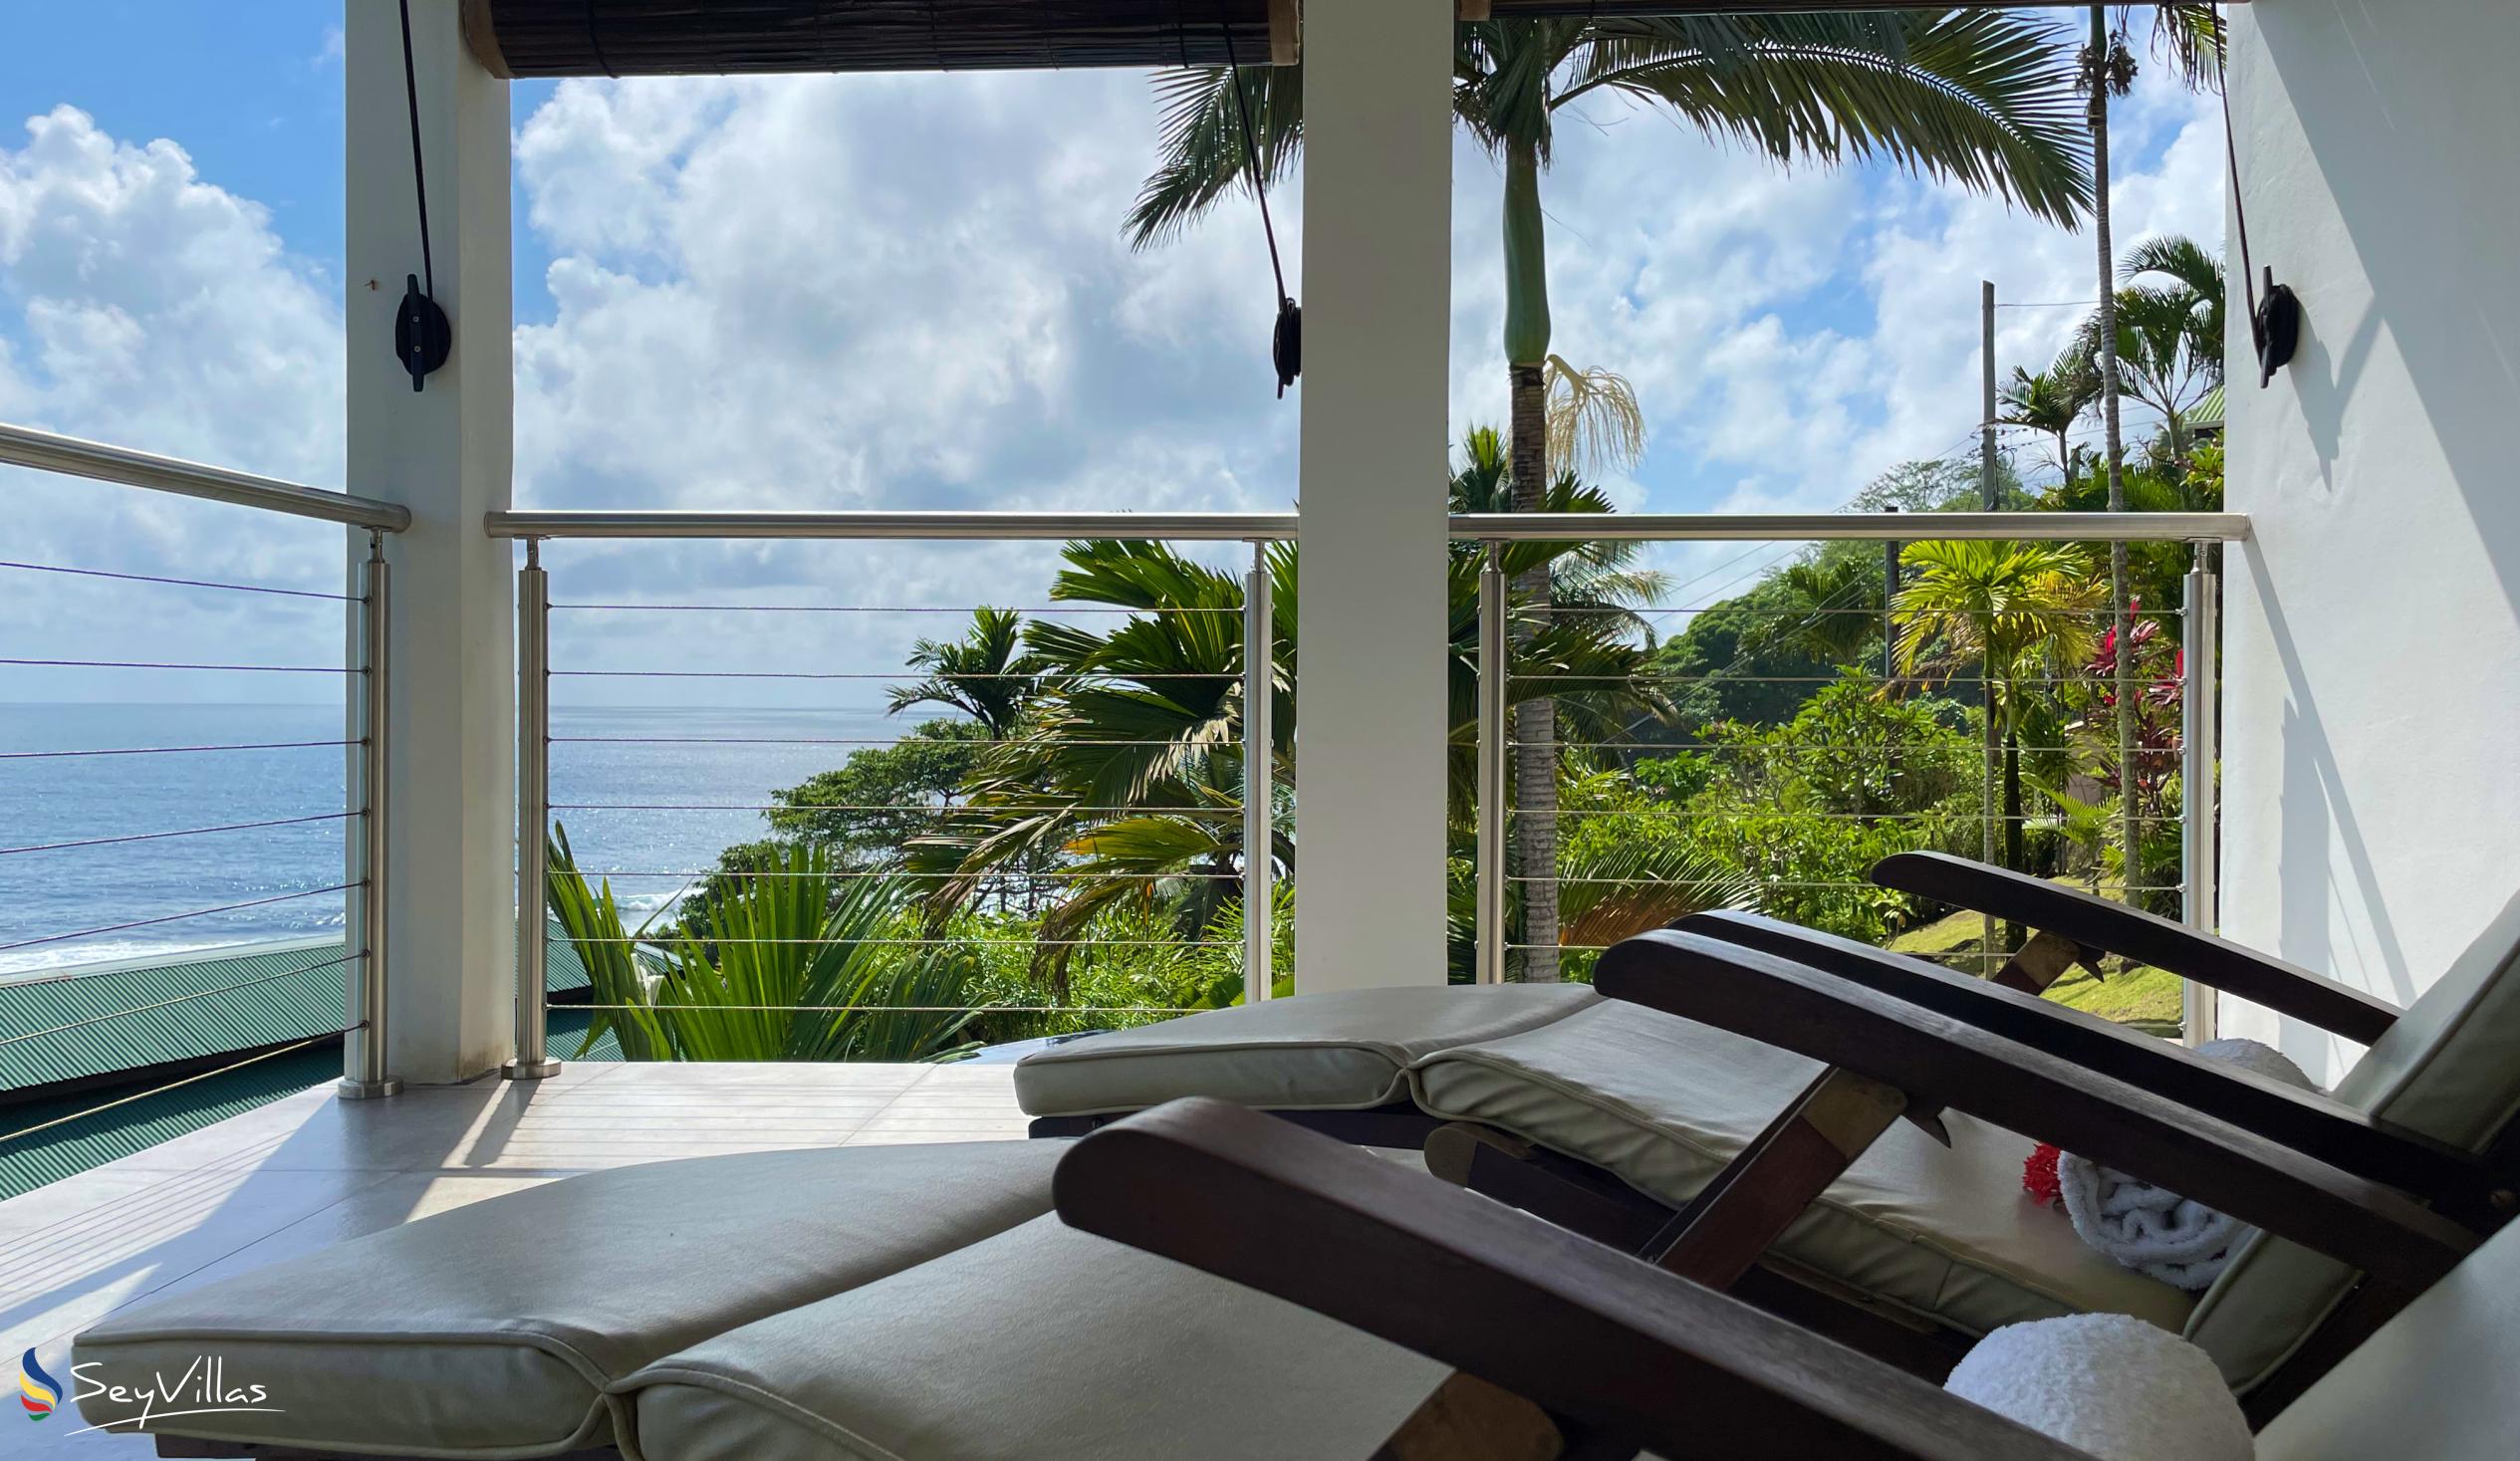 Photo 106: Chalets Bougainville - Ground Floor Apartment Villa Lemon - Mahé (Seychelles)